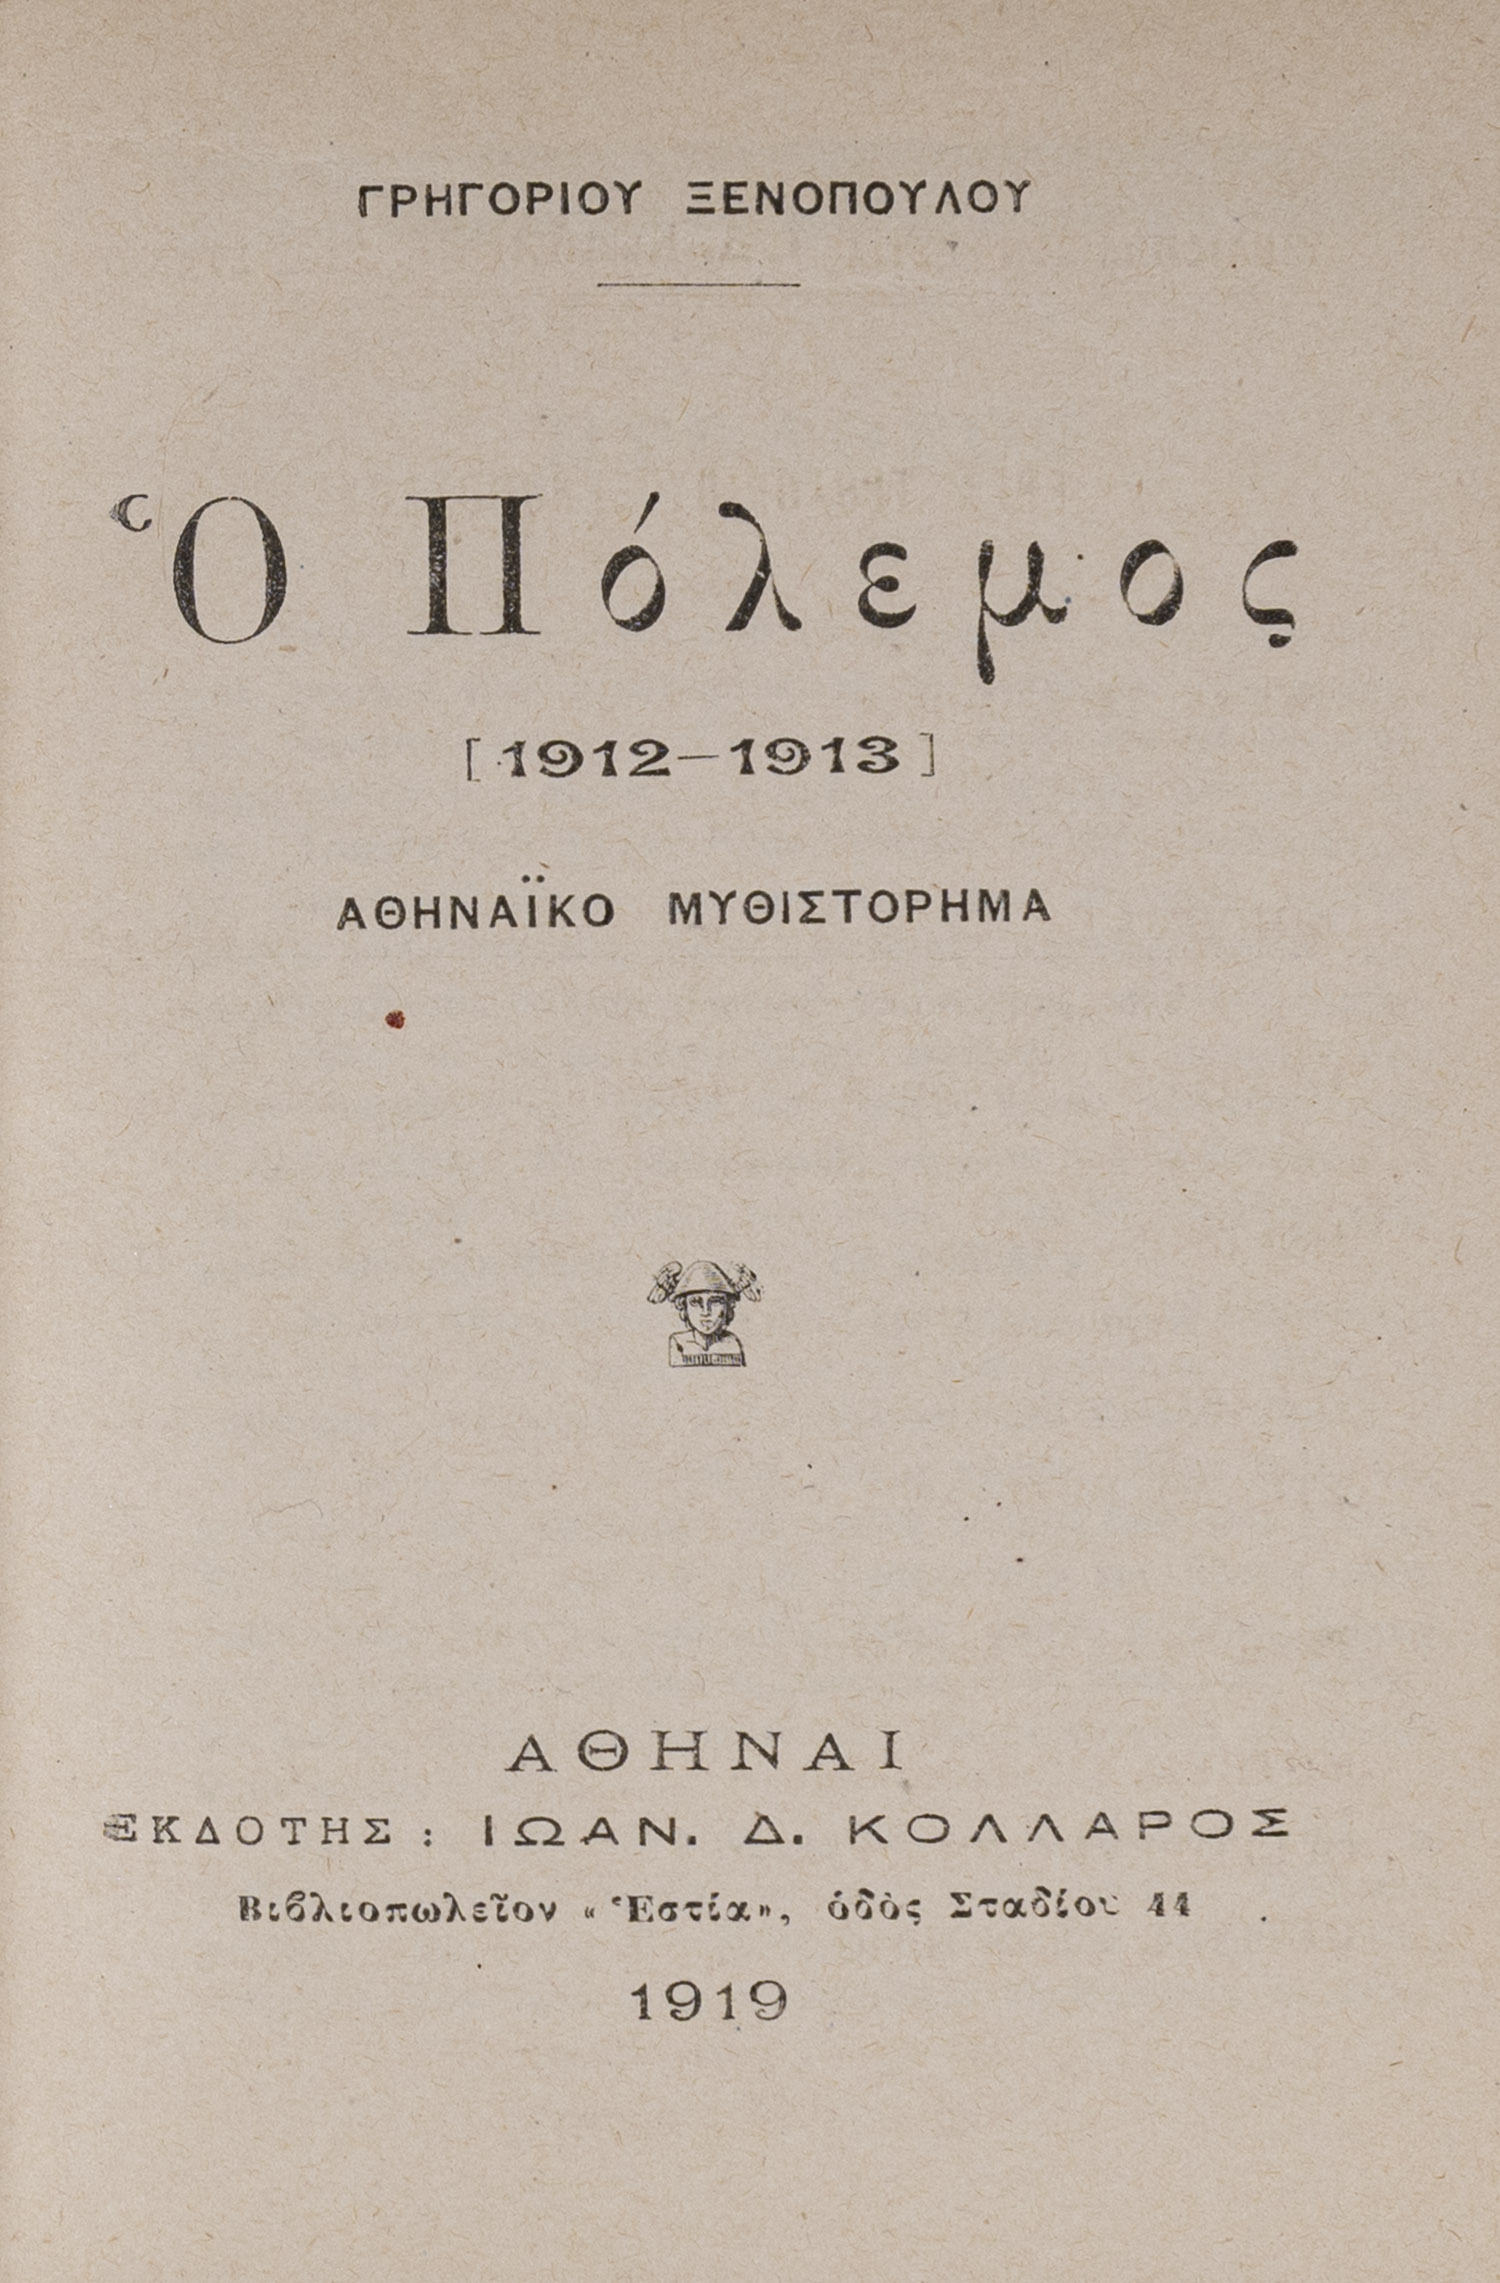 Ὁ πόλεμος [1912-1913], ἀθηναϊκό μυθιστόρημα. 